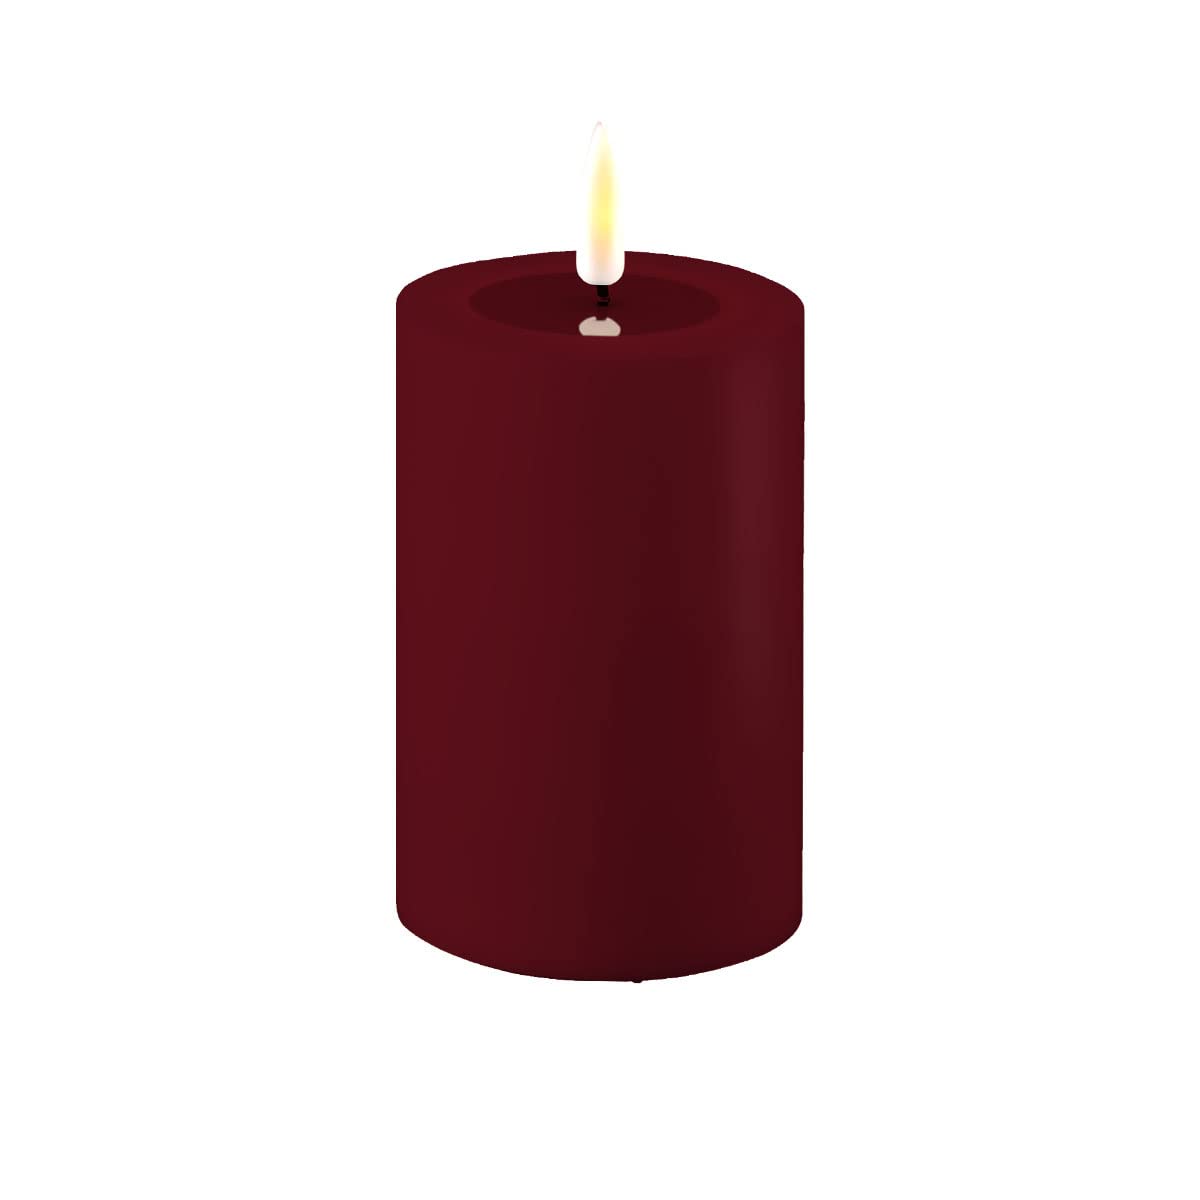 ReWu LED Kerze Deluxe Homeart, Outdoor LED Kerze (Kunststoff – Kein Echtwachs) mit realistischer Flamme, warmweißes Licht, Hitzebeständig für den Aussenbereich– (Bordeaux)